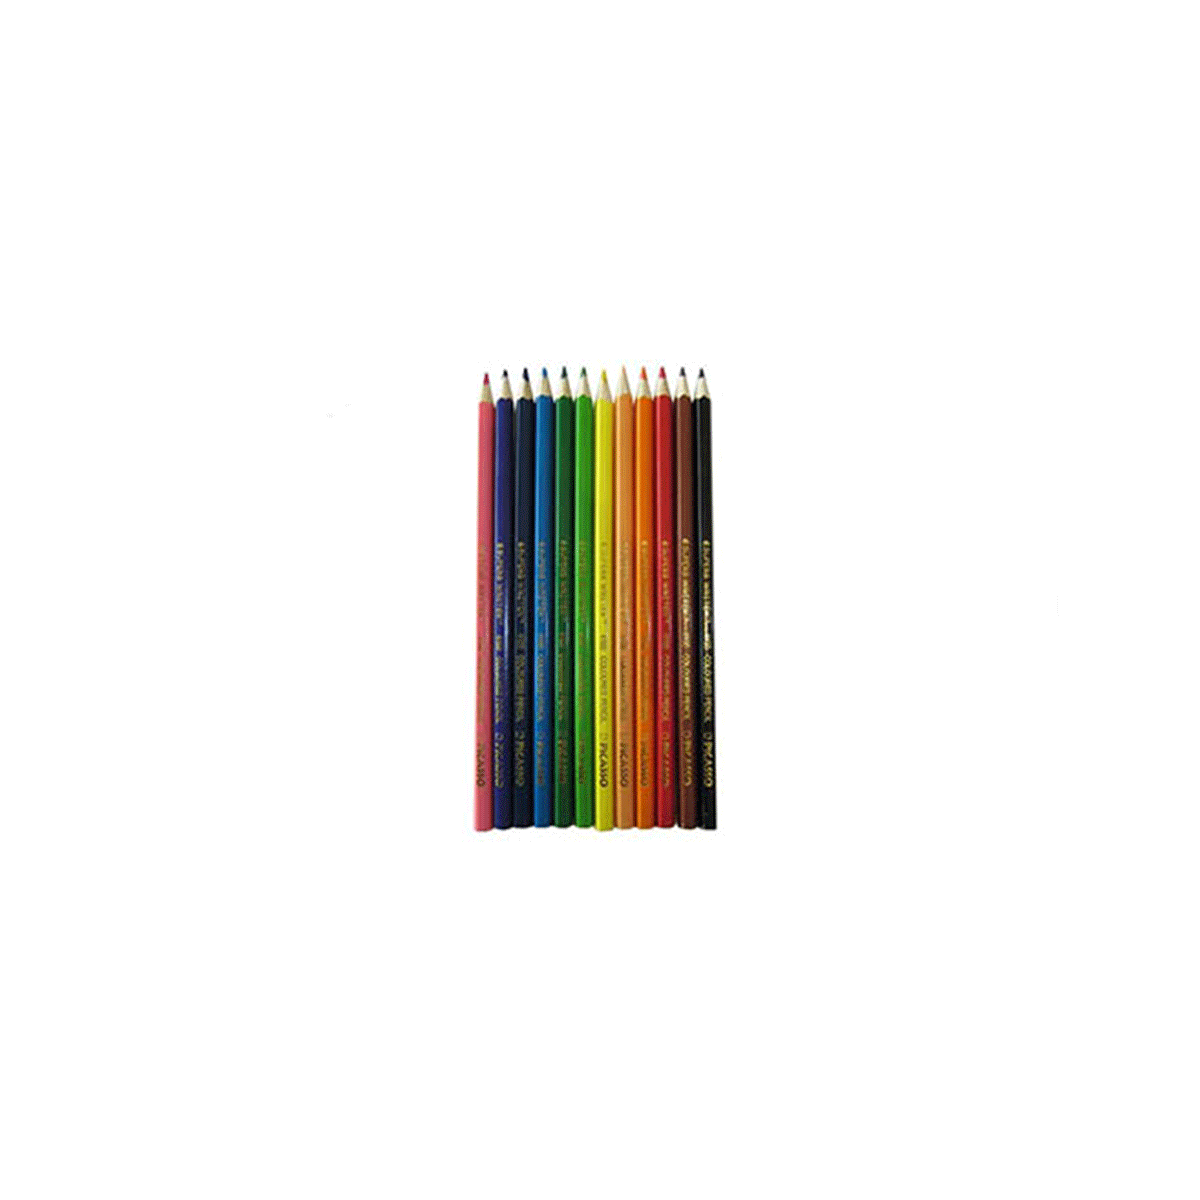 مداد رنگی 12 رنگ مقوایی پیکاسو